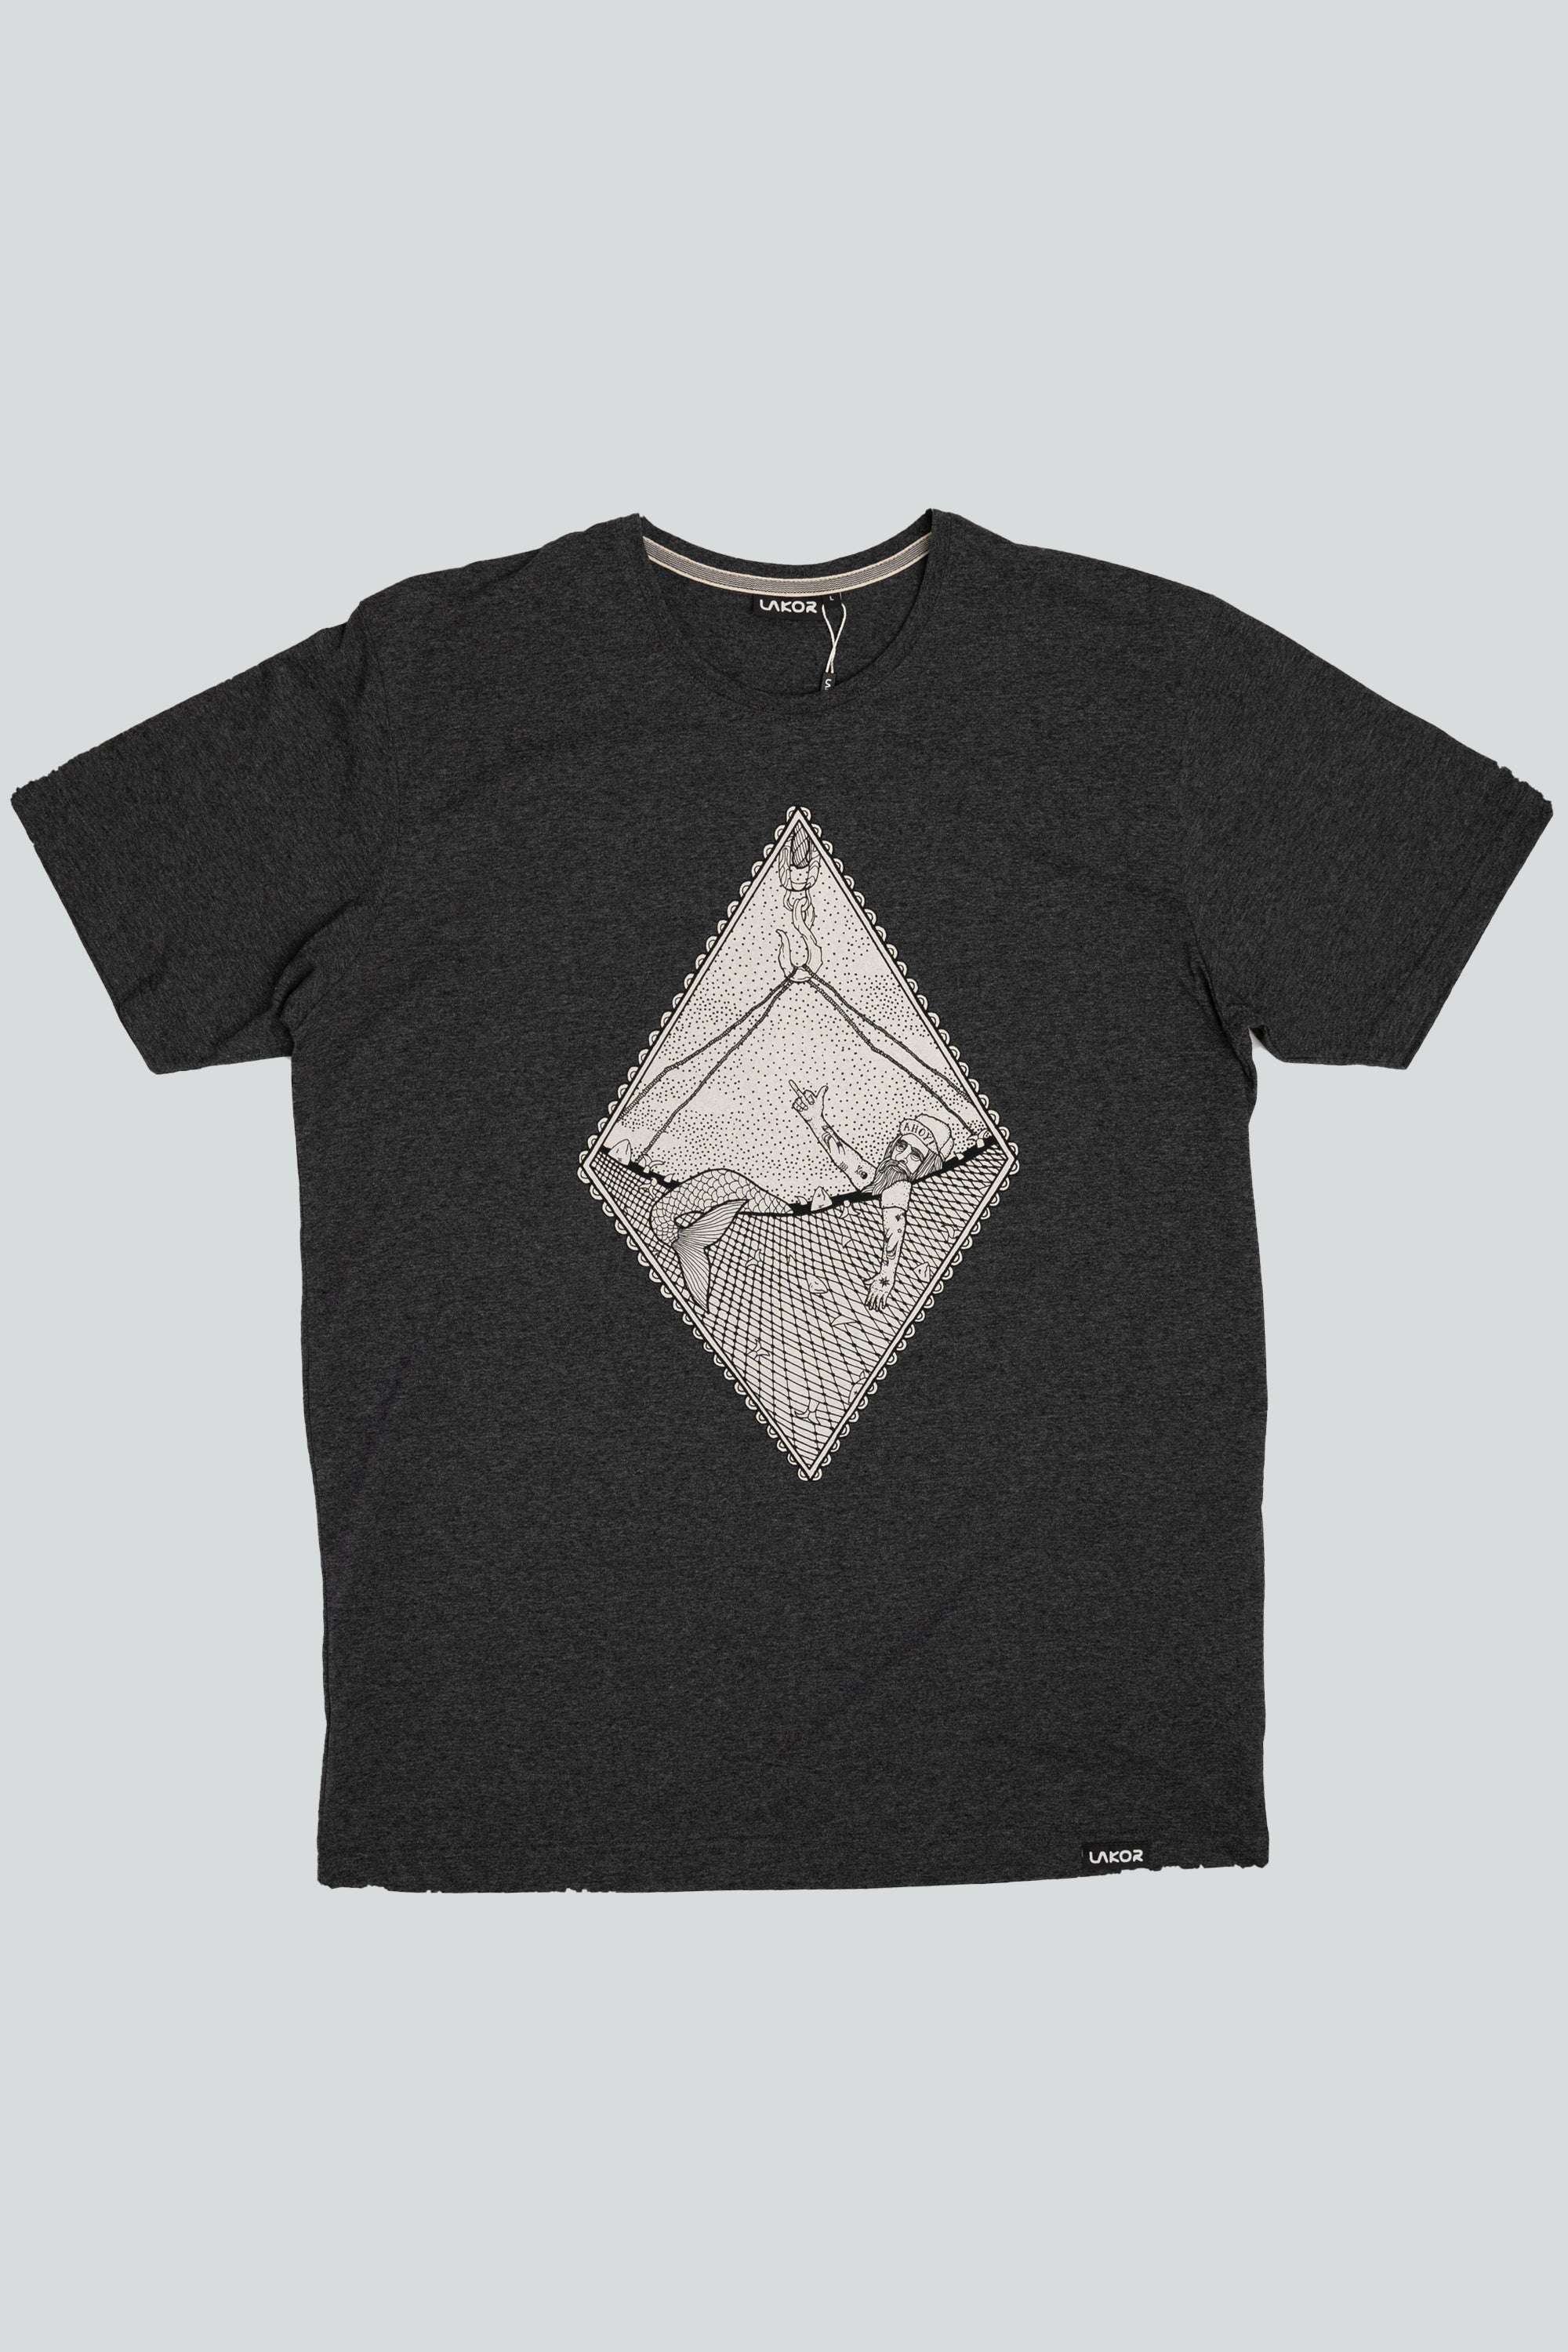 Bycatch T-shirt